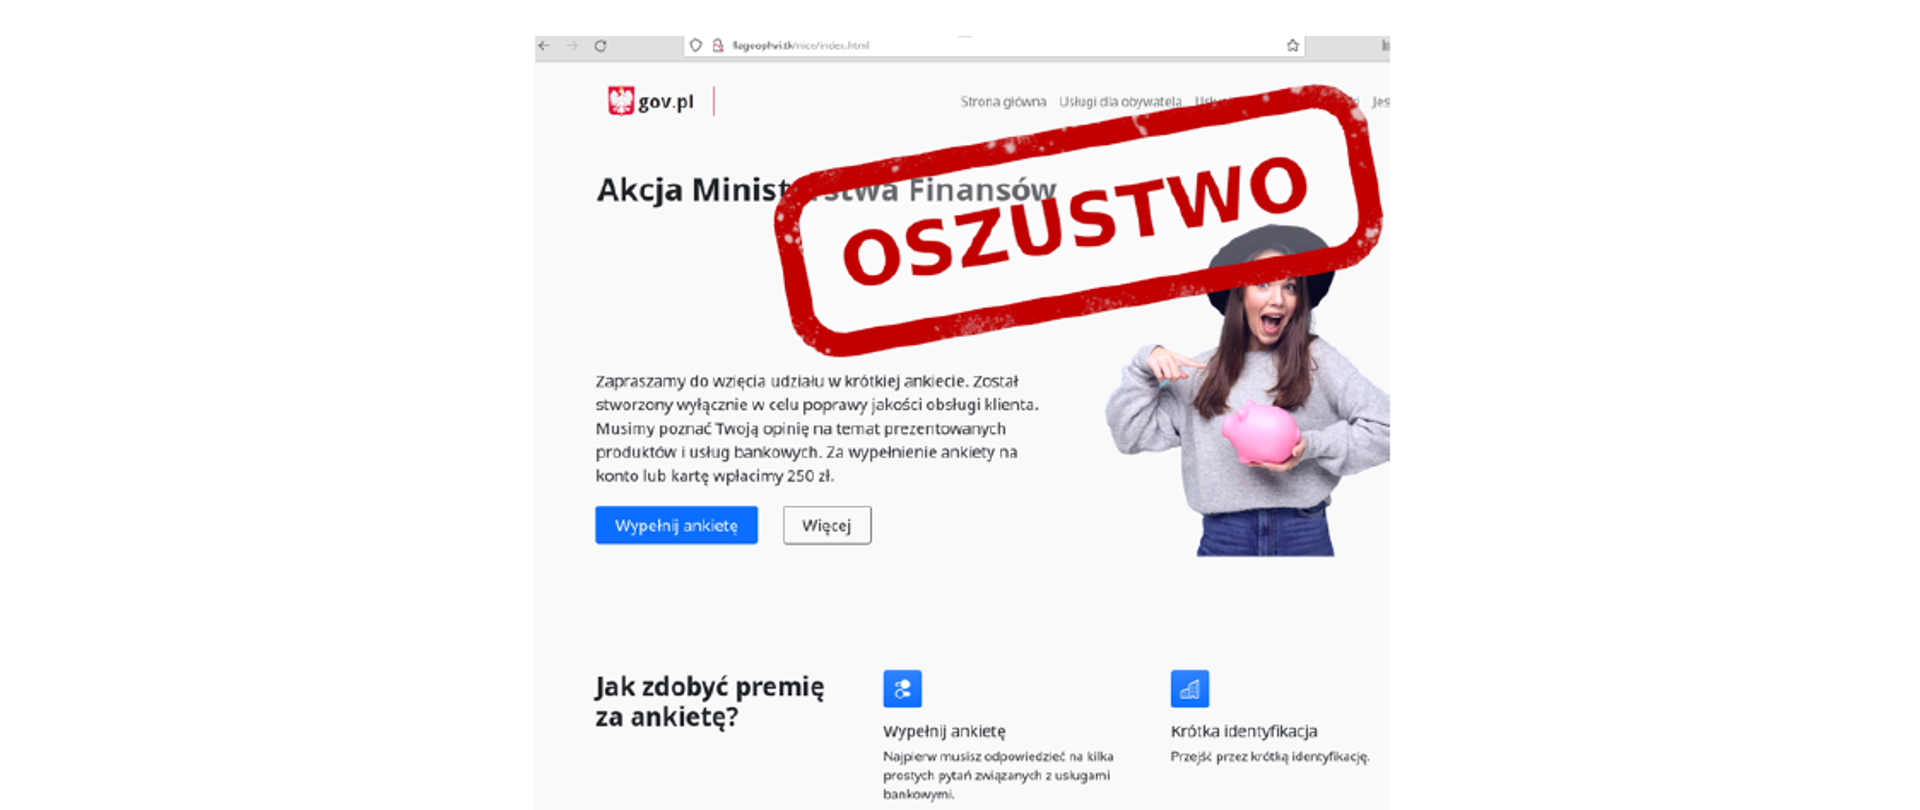 Zdjęcie sfałszowanej strony internetowej podszywającej się pod portal gov.pl